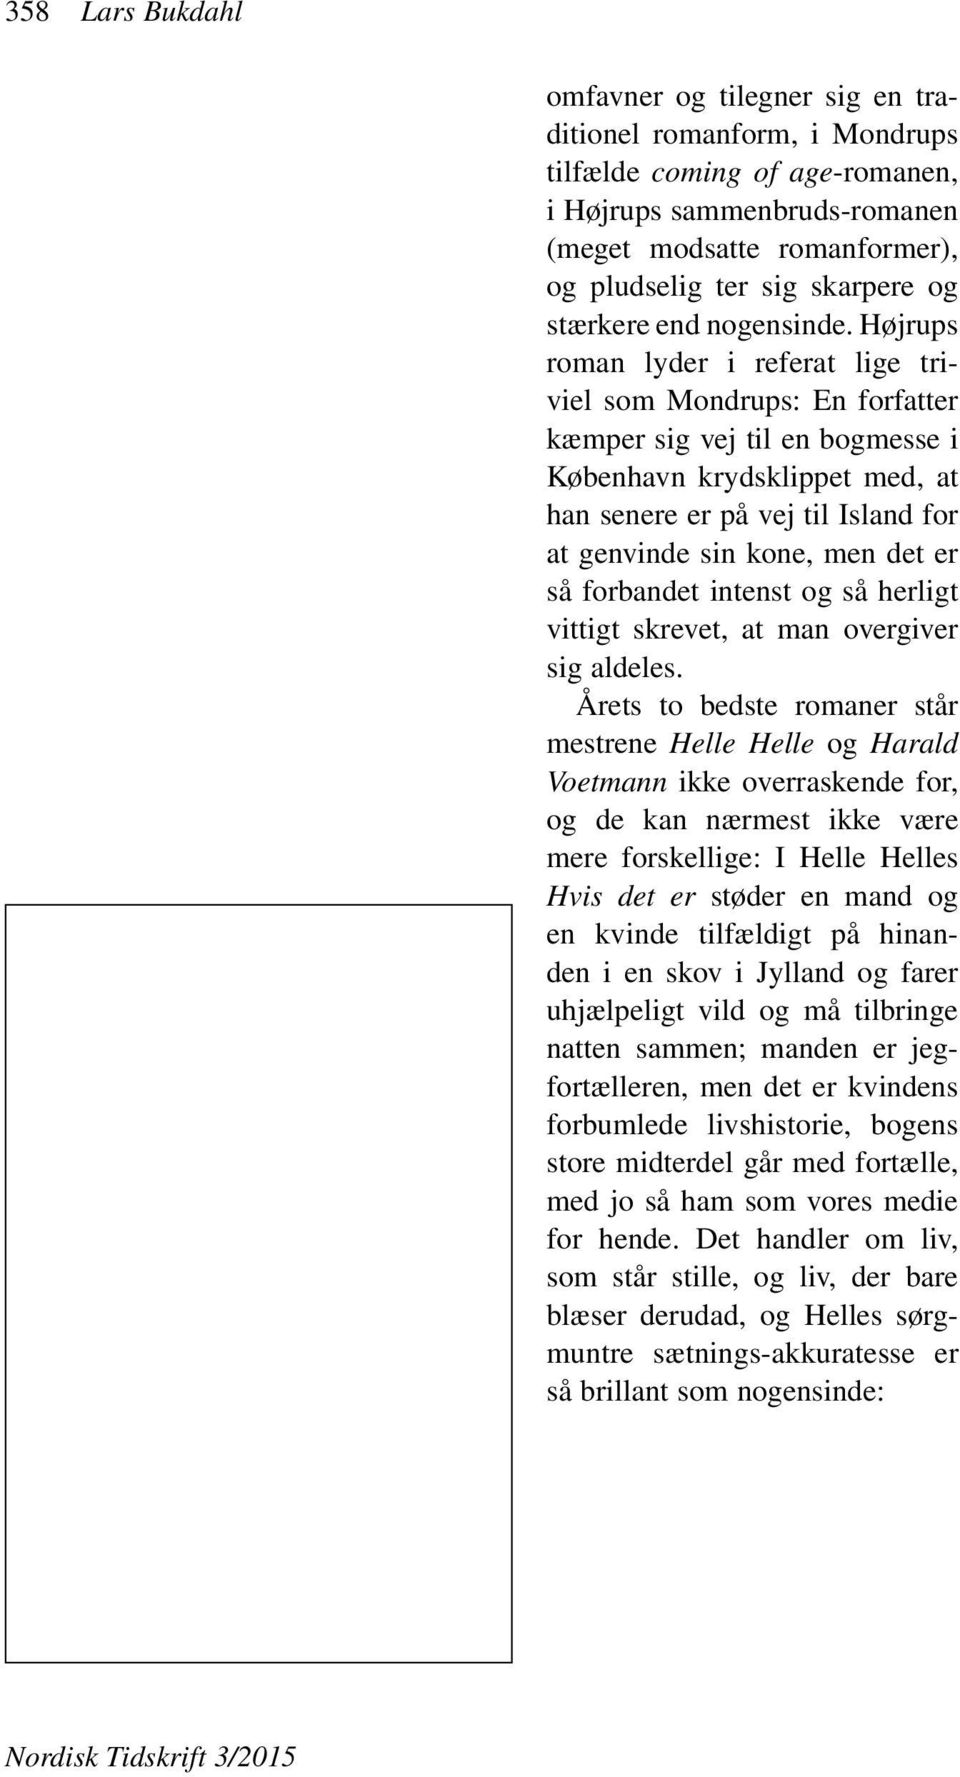 Højrups roman lyder i referat lige triviel som Mondrups: En forfatter kæmper sig vej til en bogmesse i København krydsklippet med, at han senere er på vej til Island for at genvinde sin kone, men det